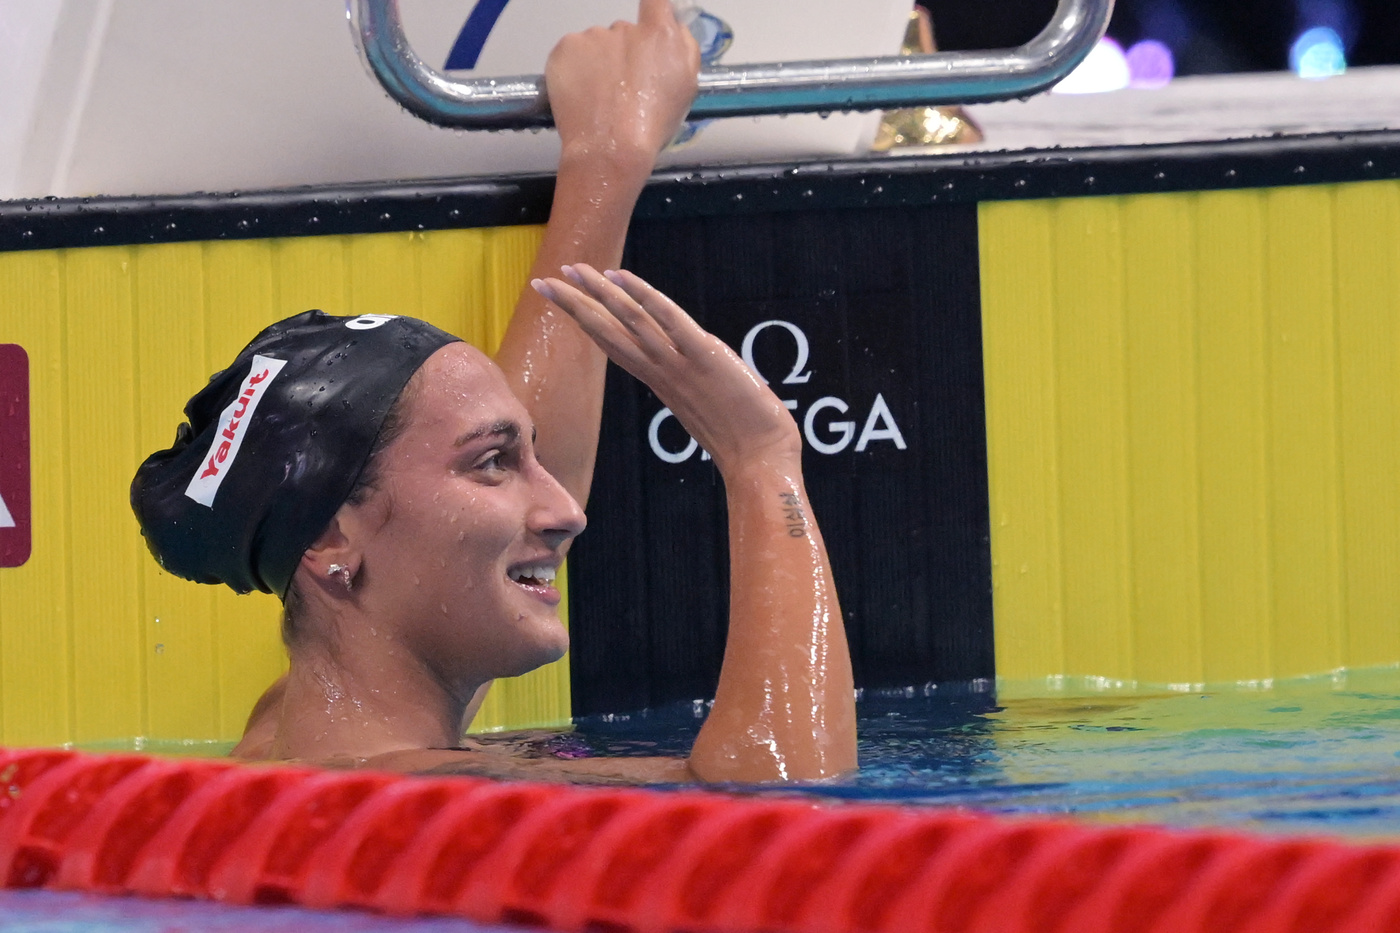 Nuoto, quando gareggia Simona Quadarella agli Europei: i giorni precisi, programma, orari, tv